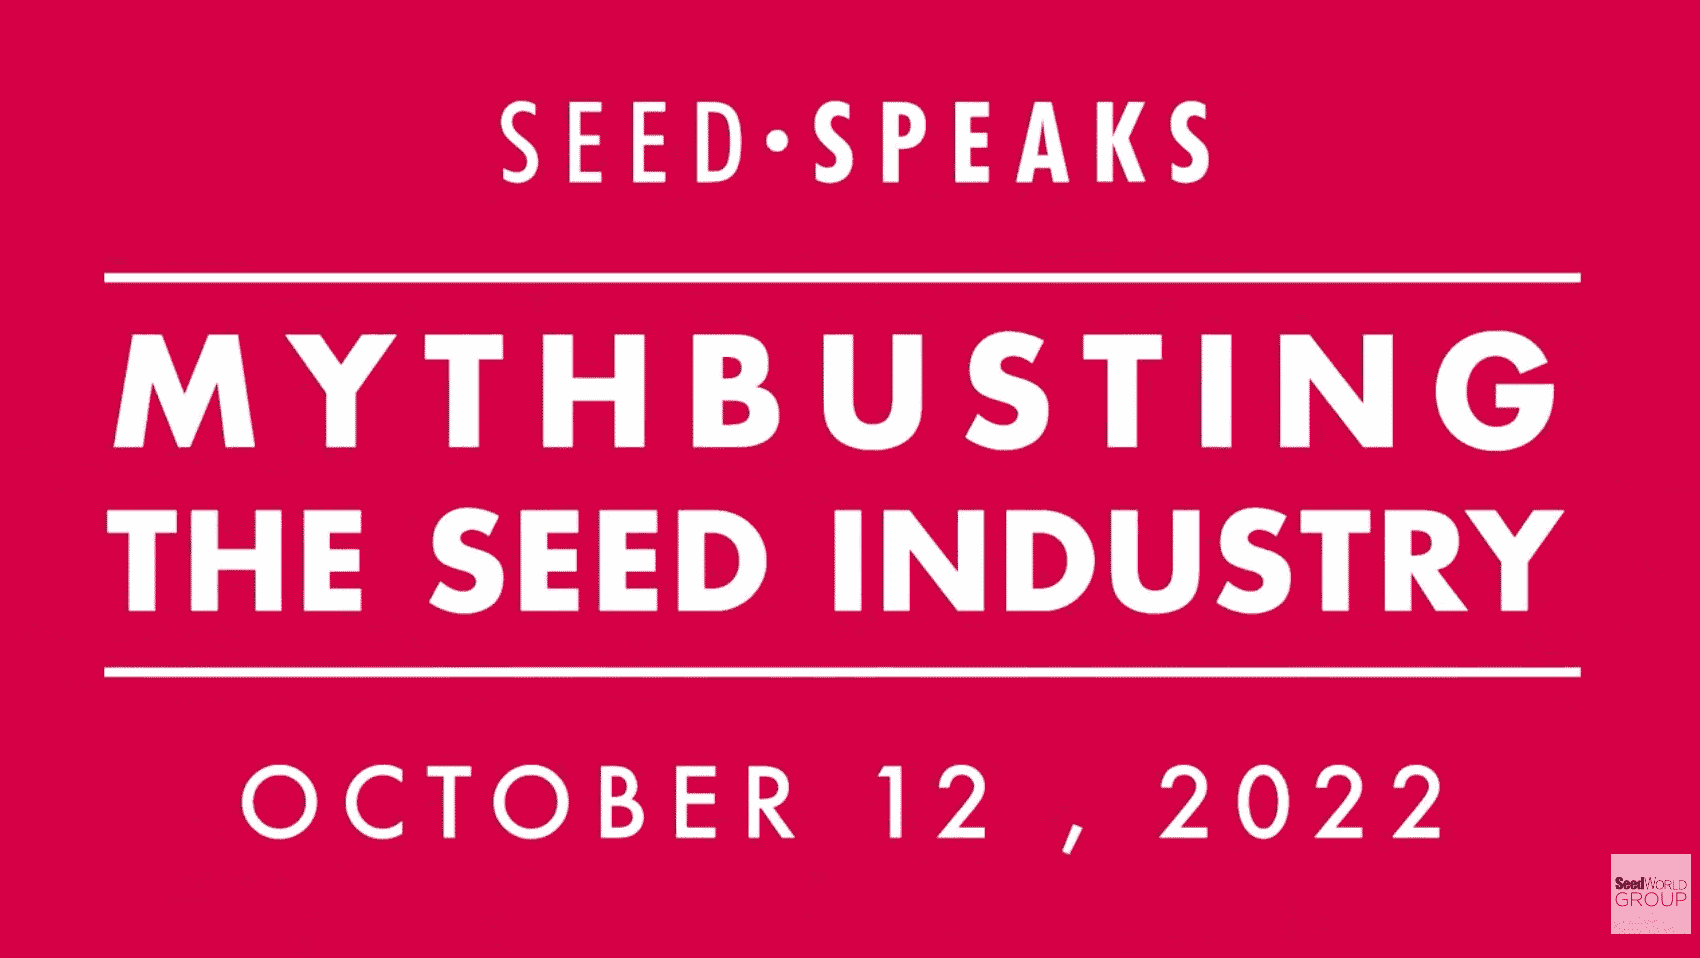 Seed Speaks mythbusting season